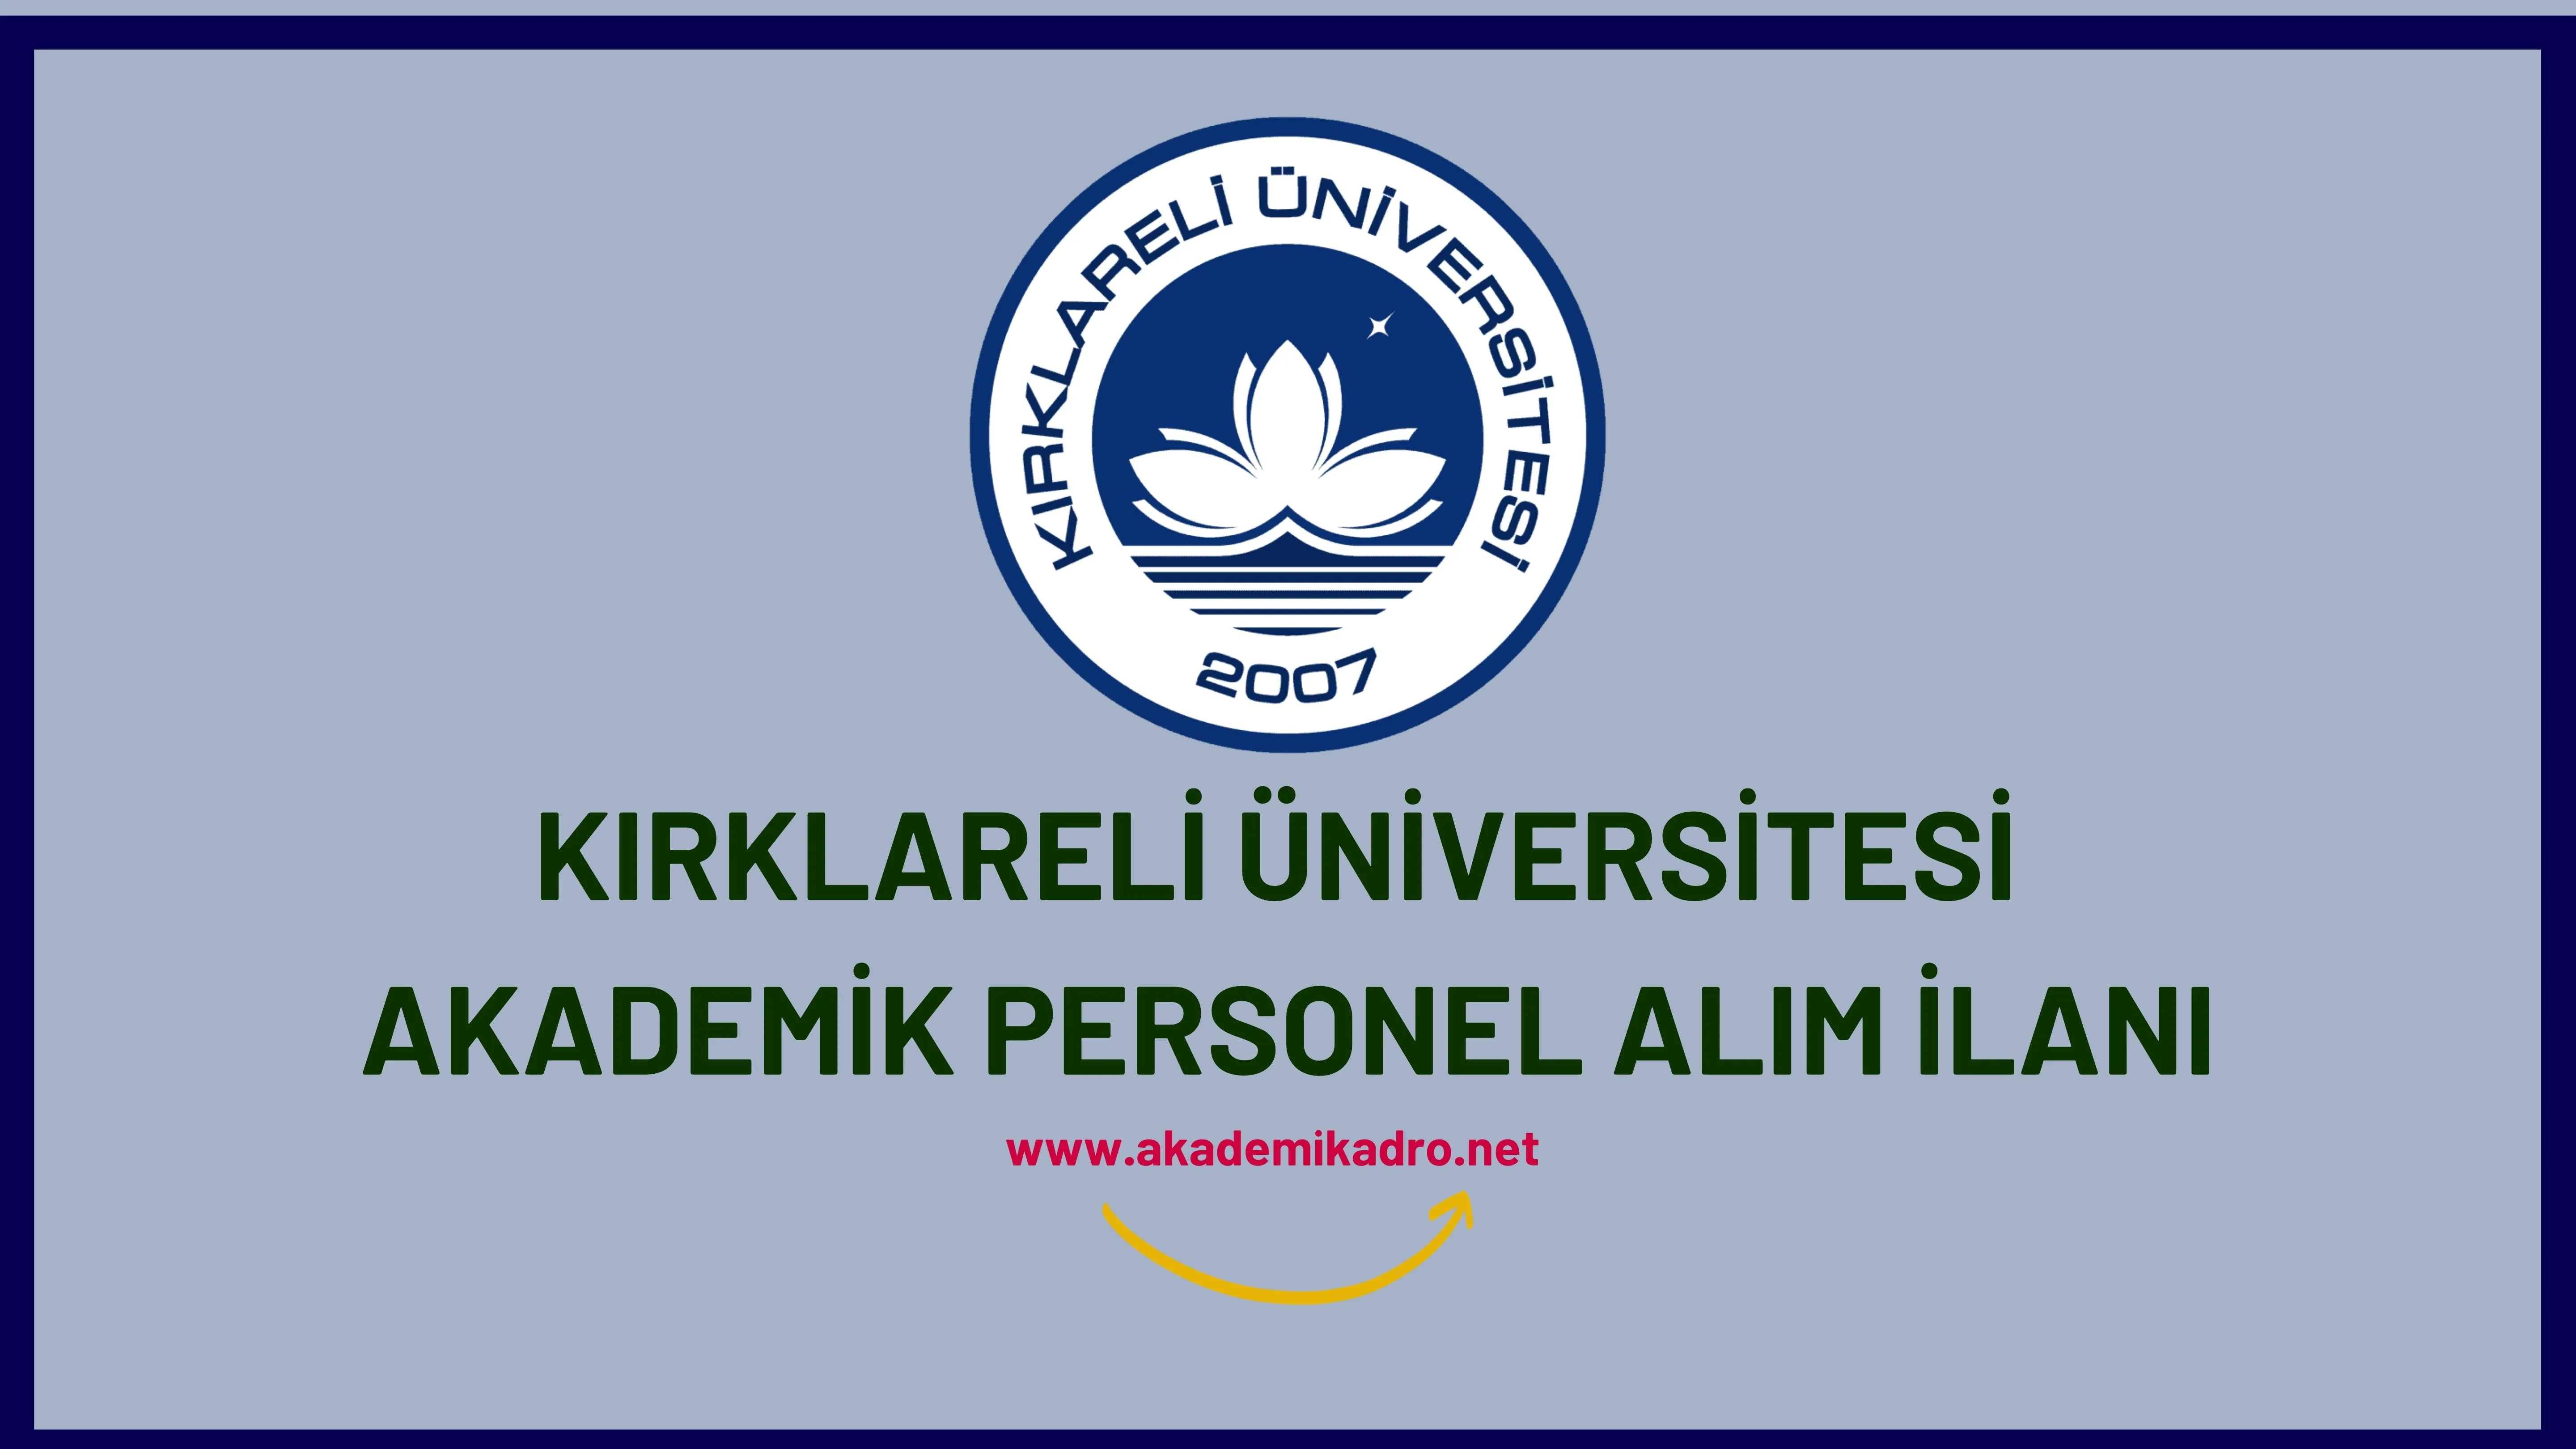 Kırklareli Üniversitesi birçok alandan 35 Akademik personel alacak. Son başvuru tarihi 